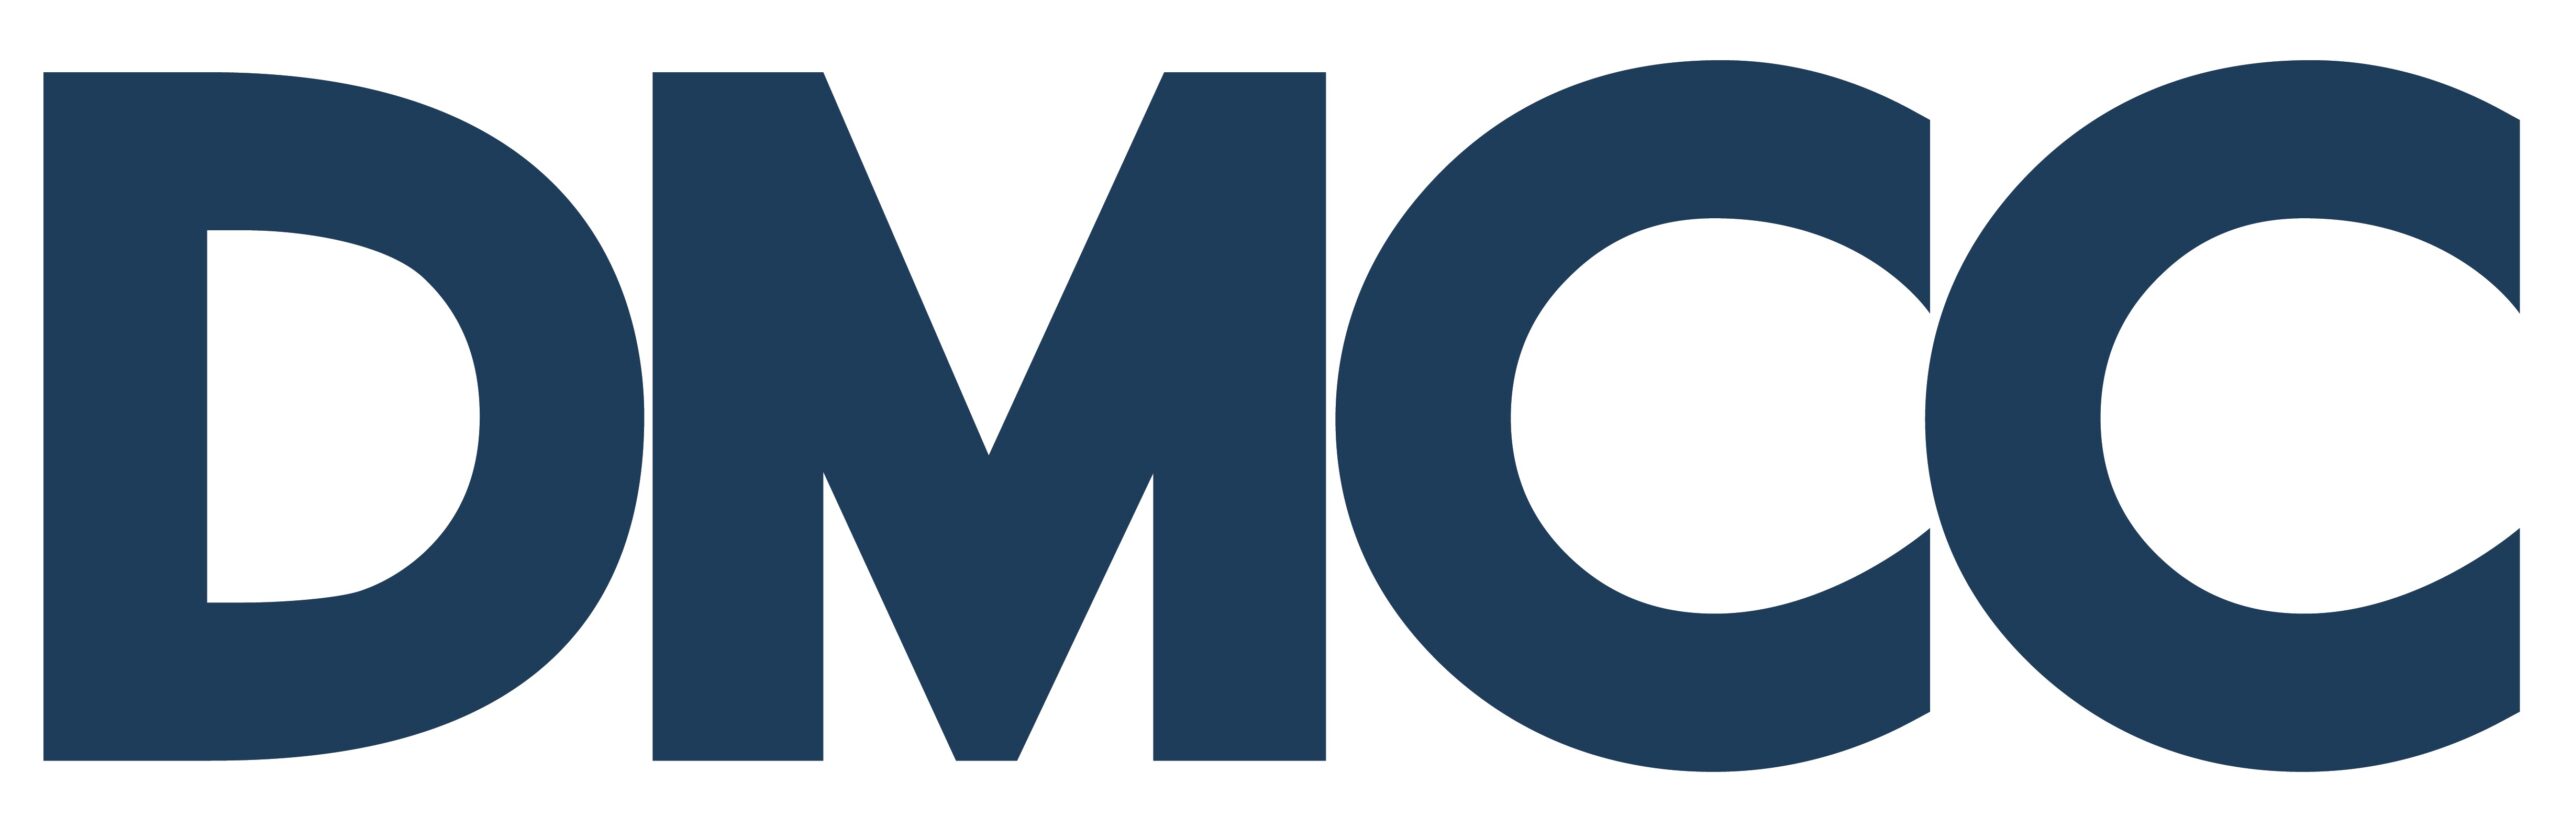 DMCC_logo